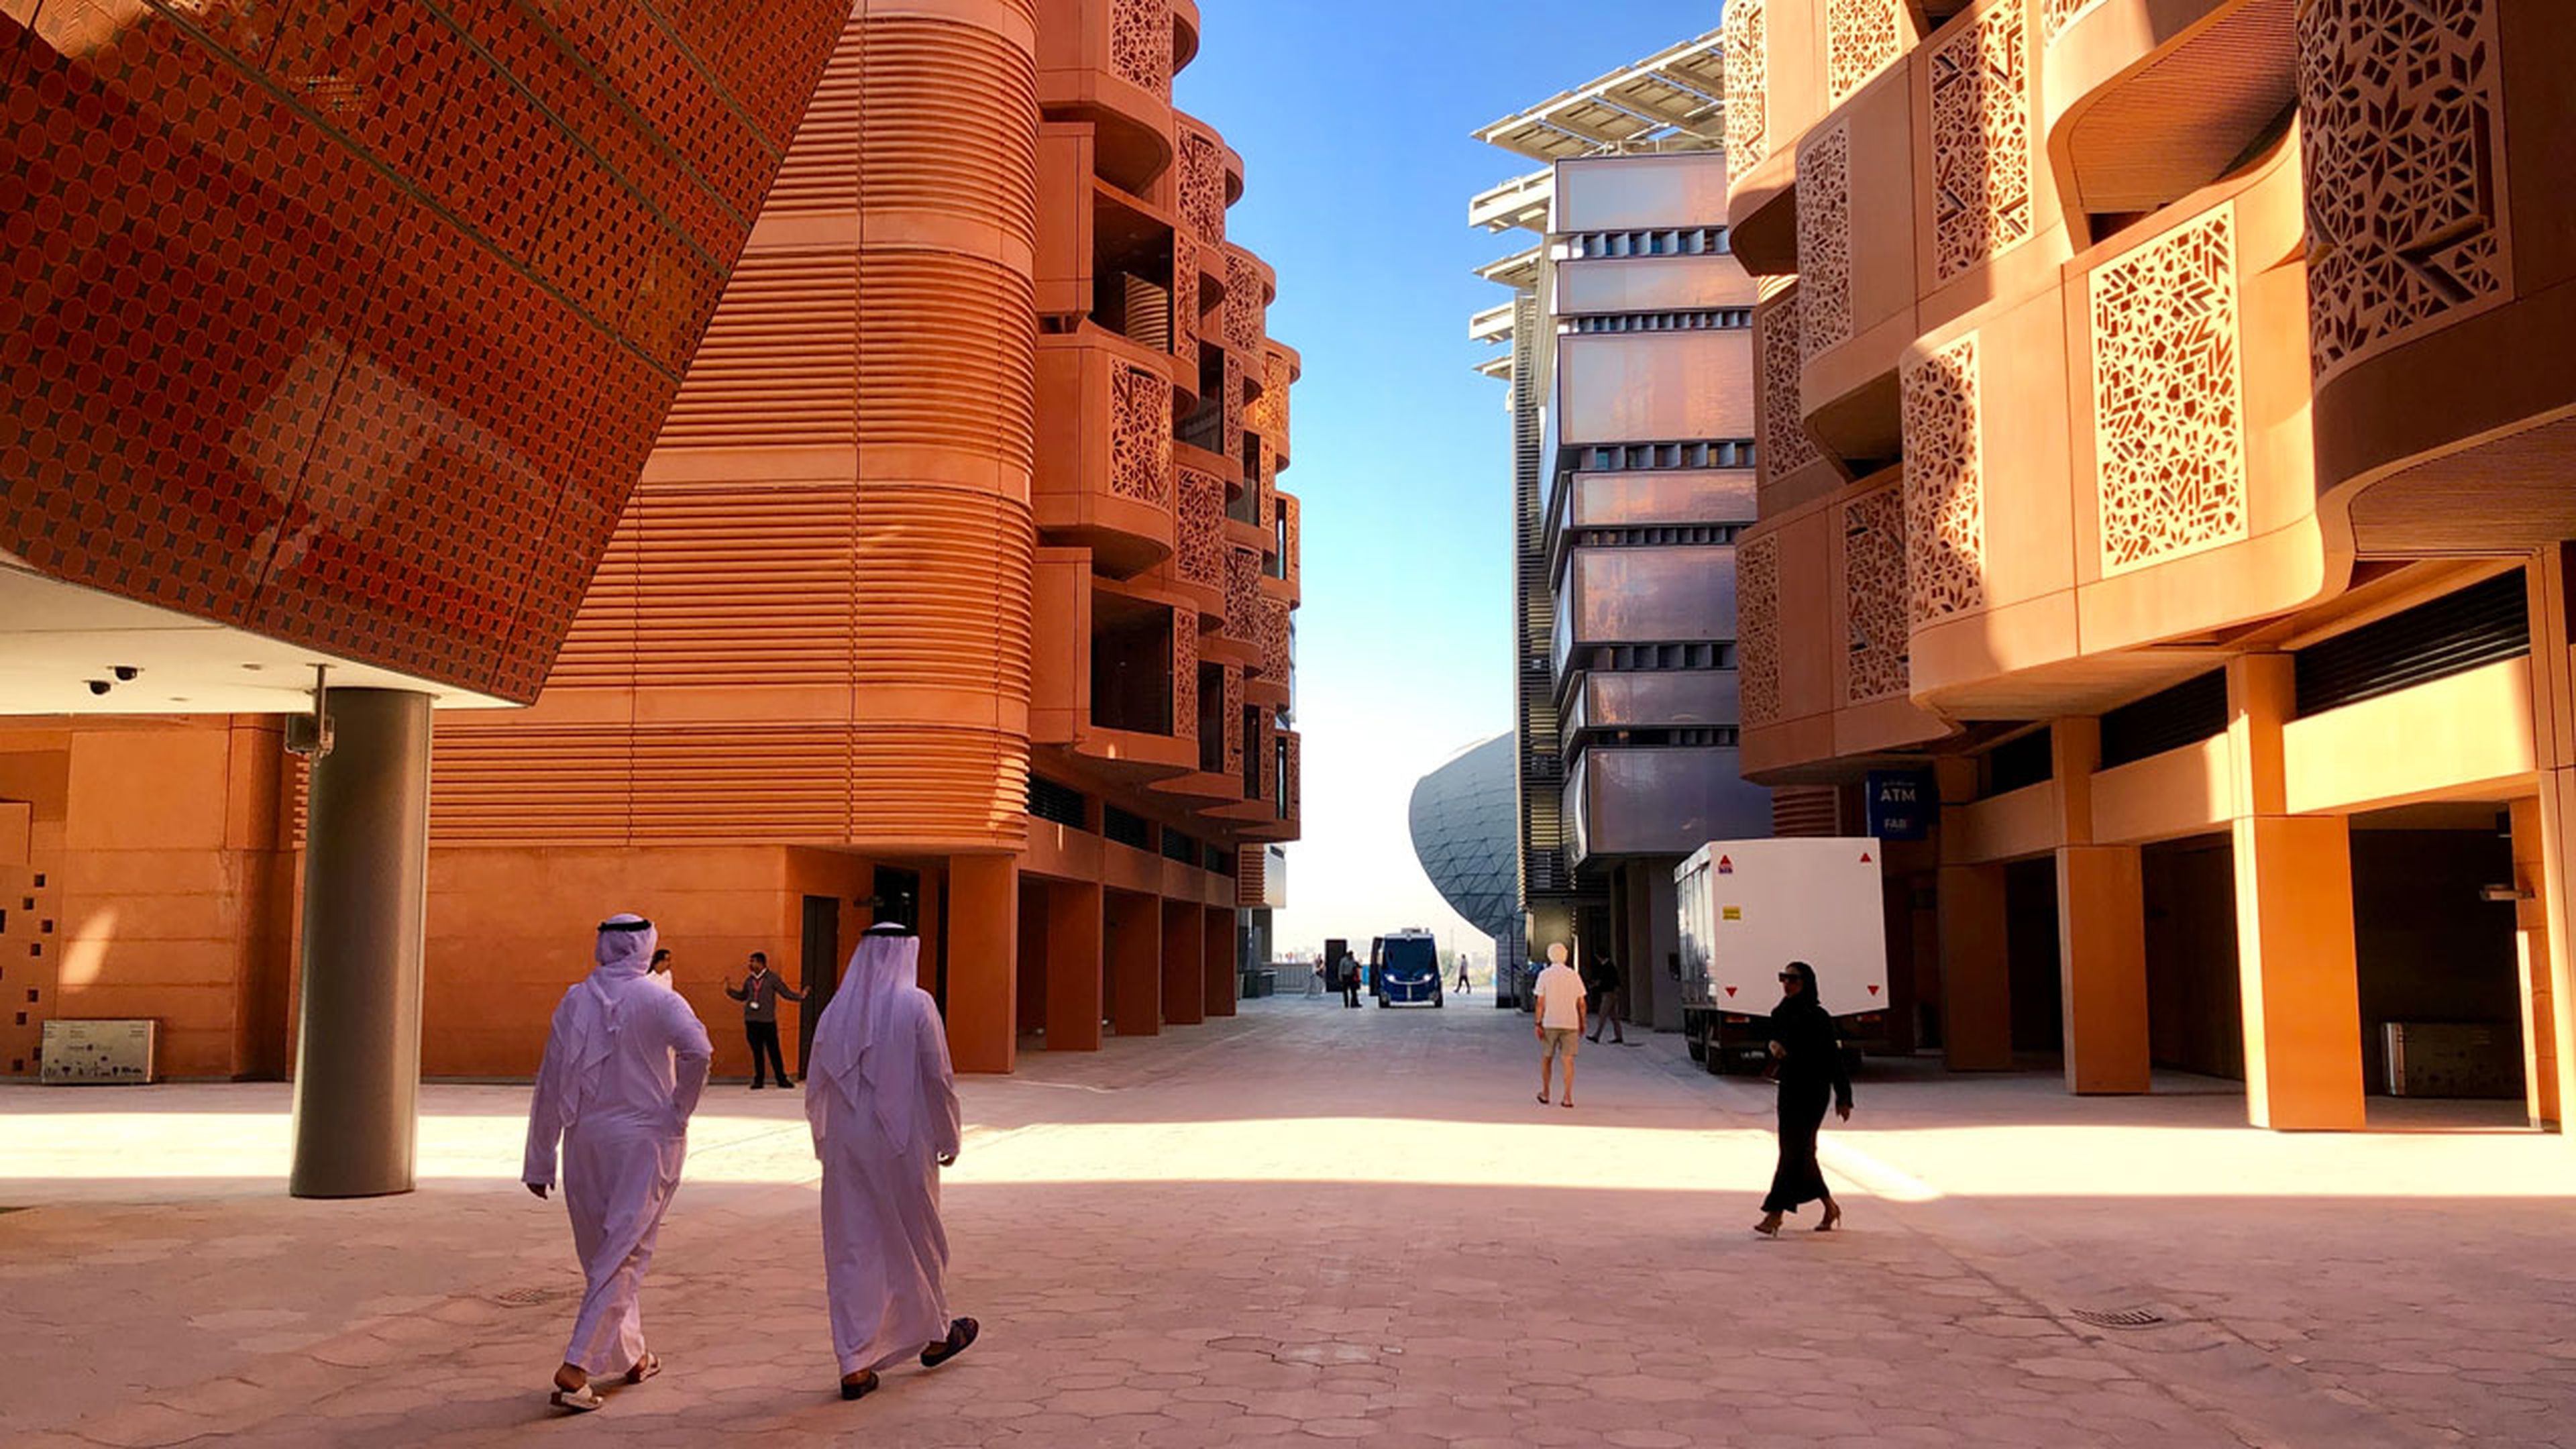 Edificios que combinan modernas técnicas de construcción con arquitectura tradicional árabe.